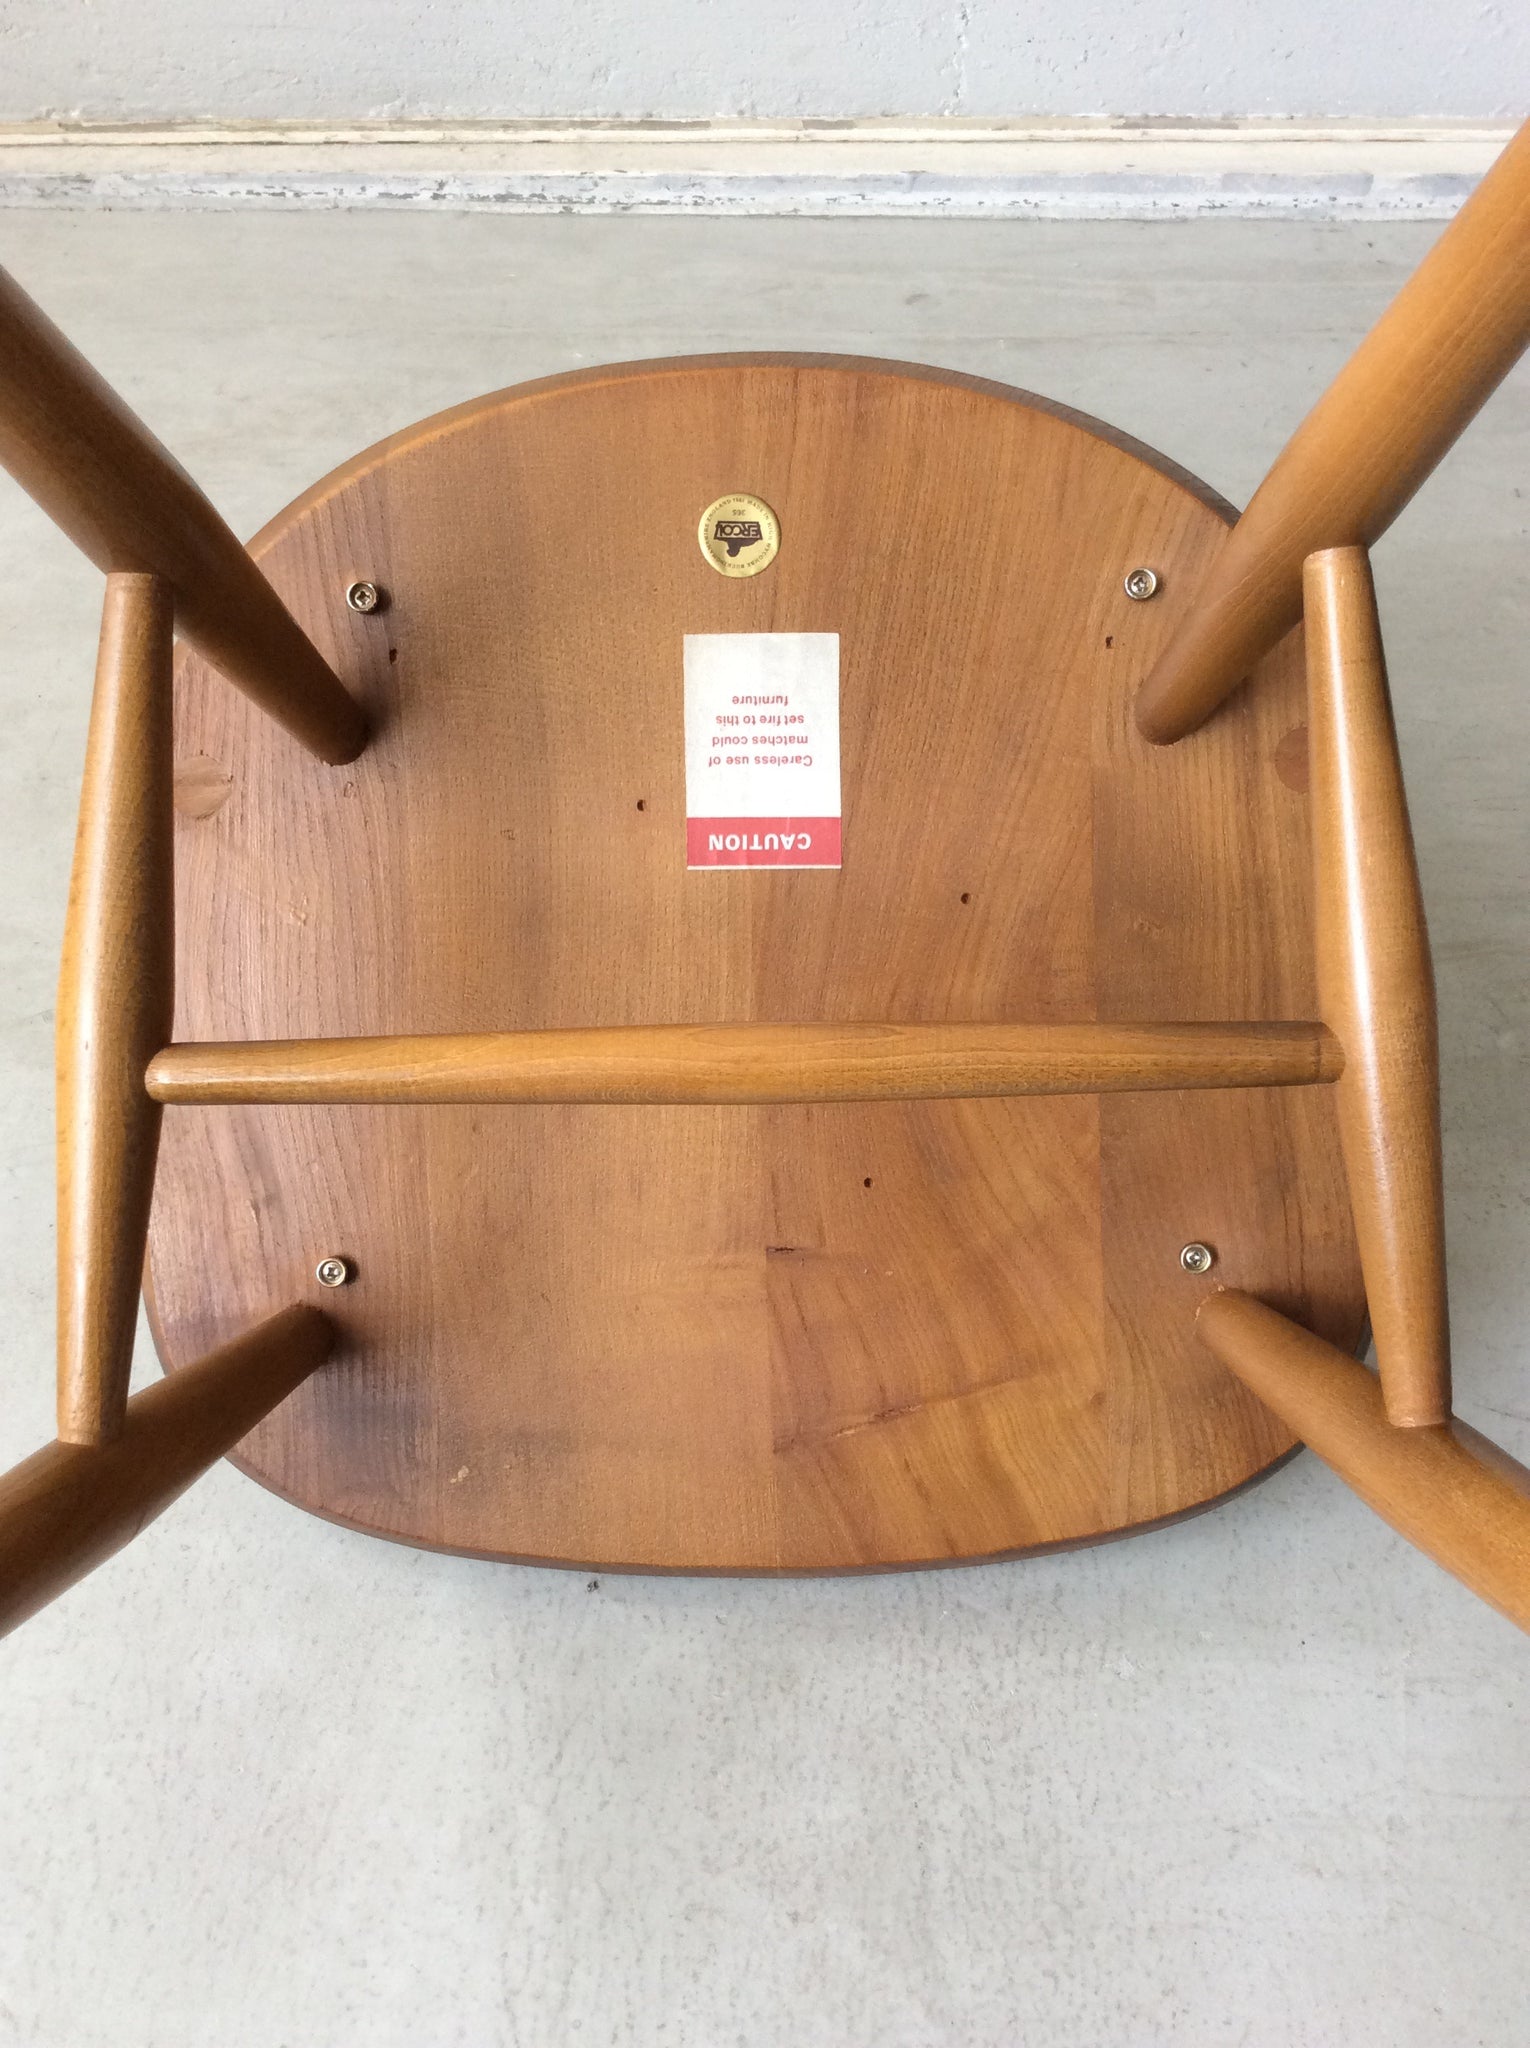 アーコール クエーカー ウィンザー チェア / ercol quaker windsor chair '365' #0146